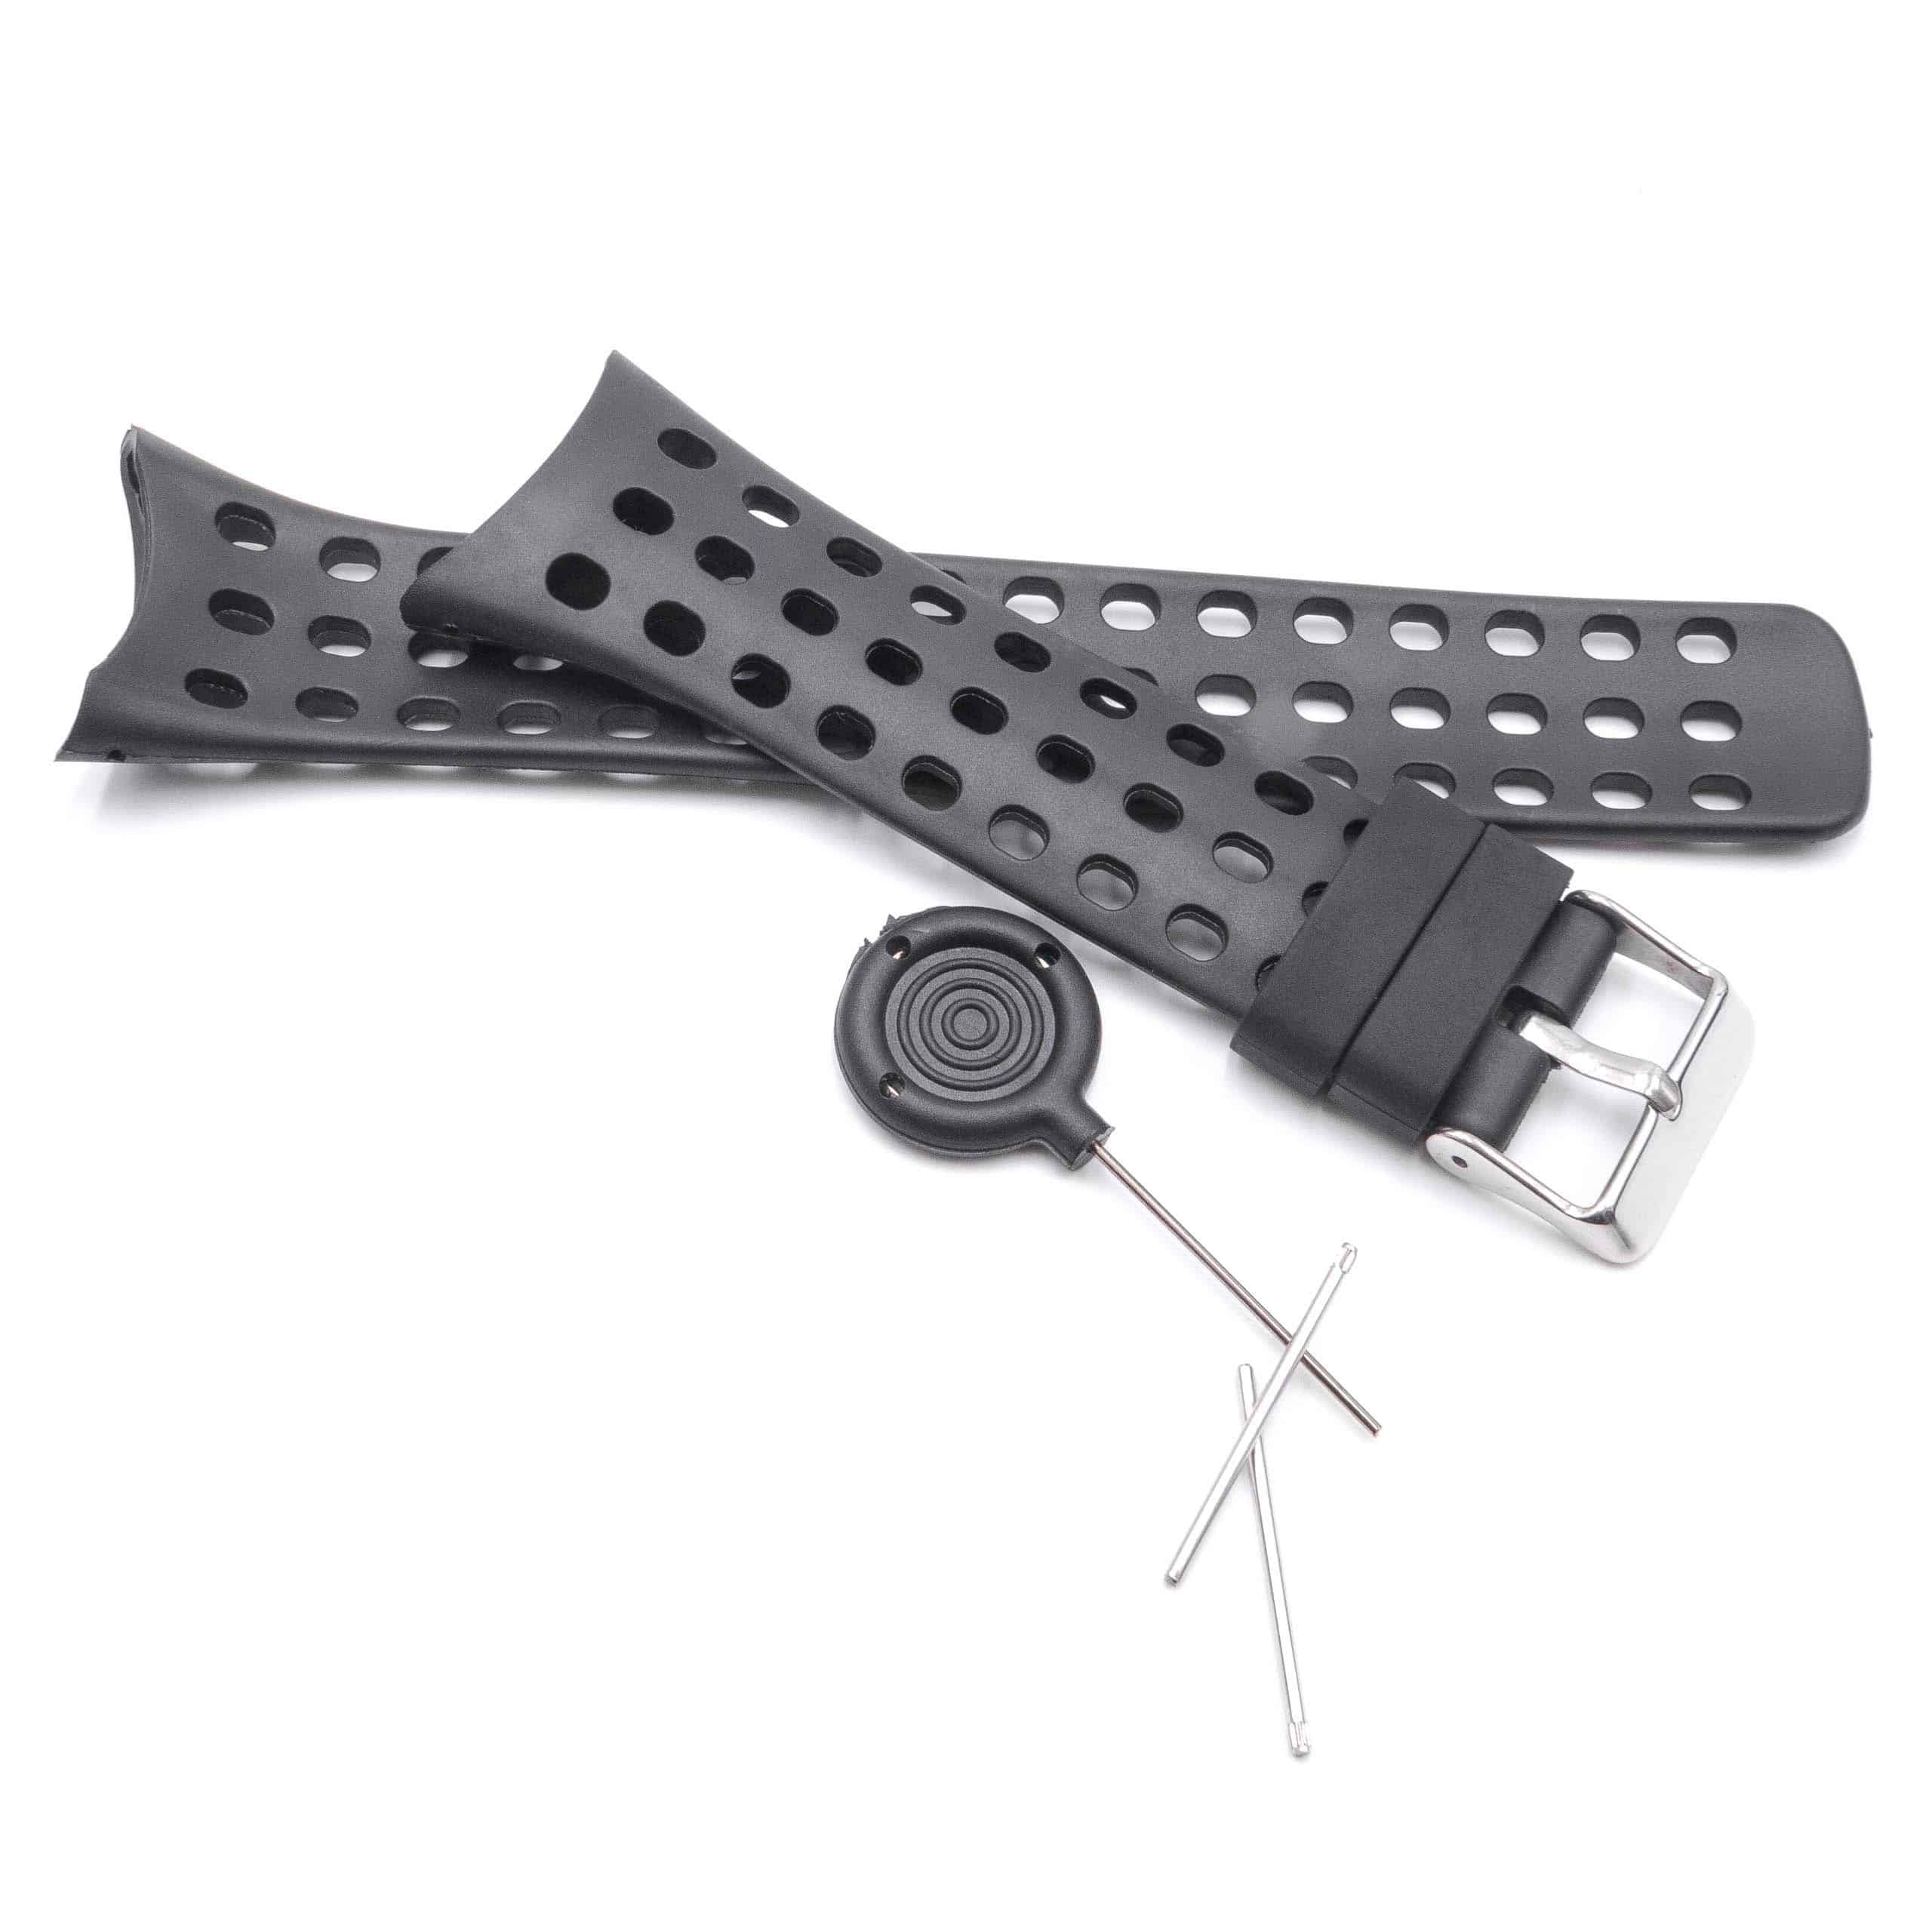 Armband Männer für Suunto Smartwatch - 12,6 + 9,5 cm lang, 20mm breit, schwarz